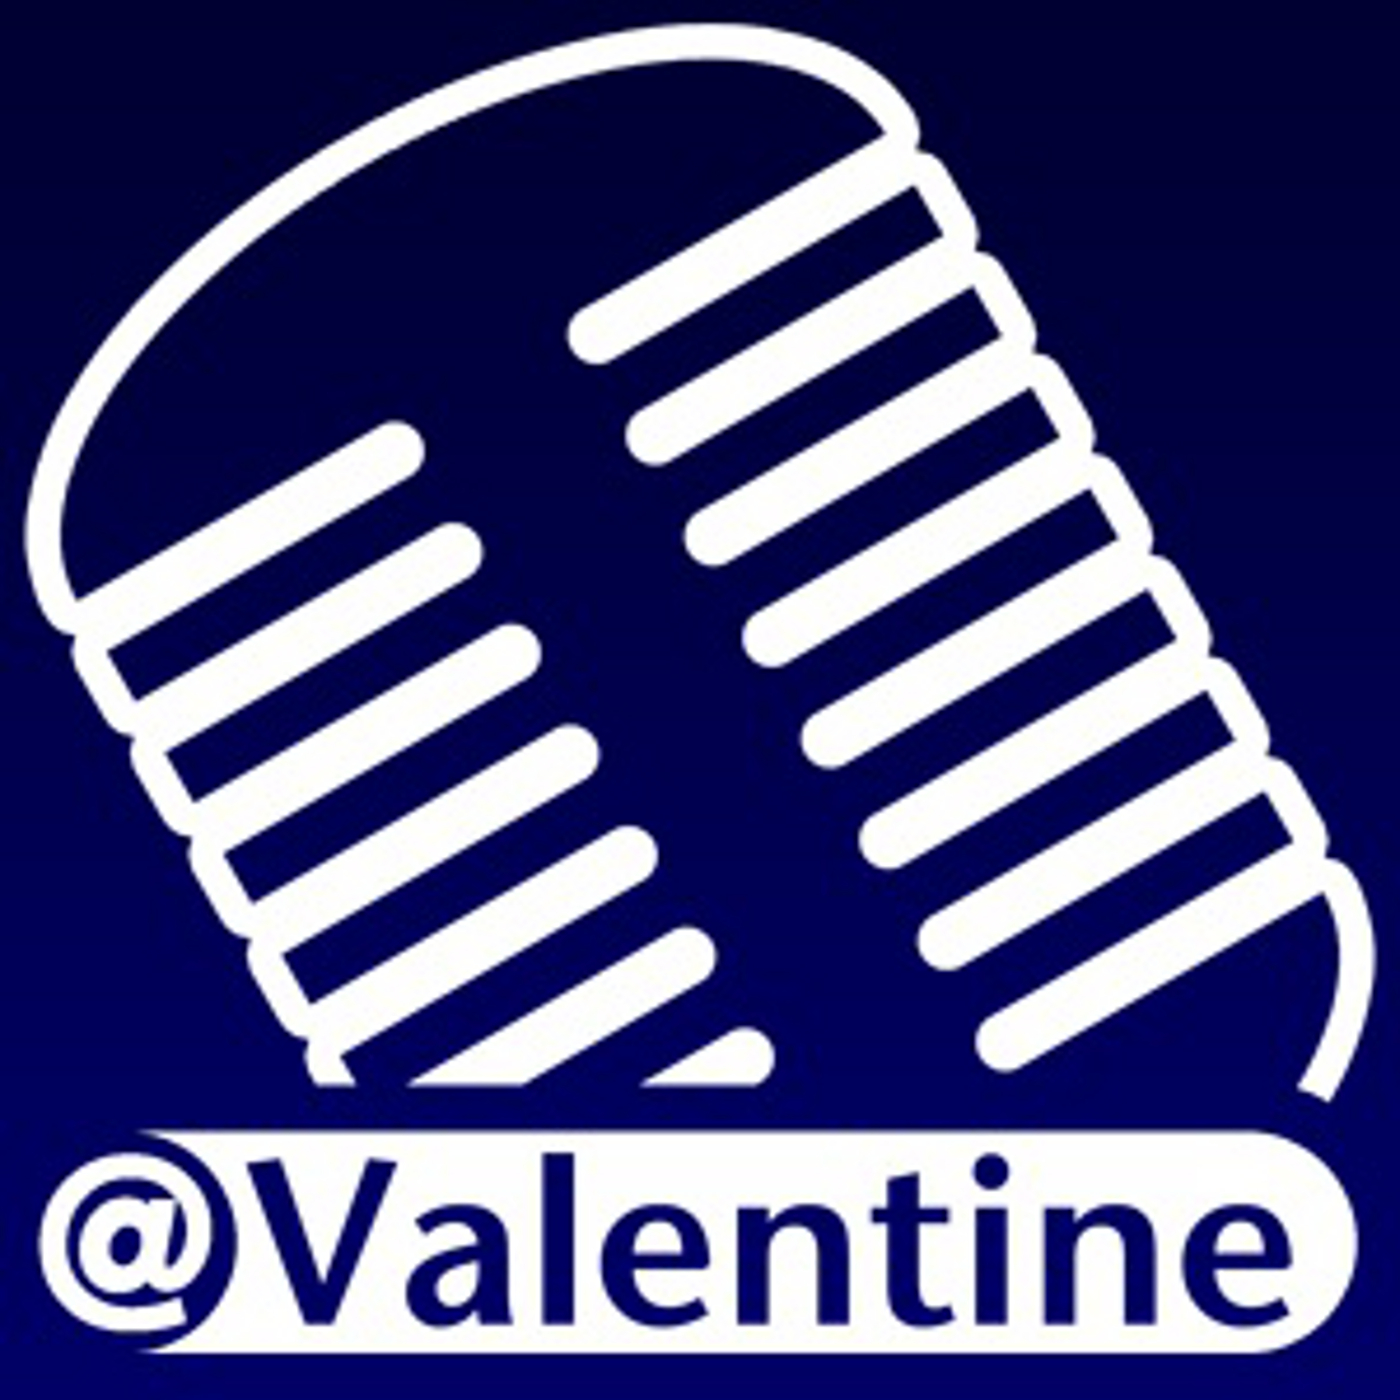 ValentineCast Episode #225 - Healthy6 - Cornered